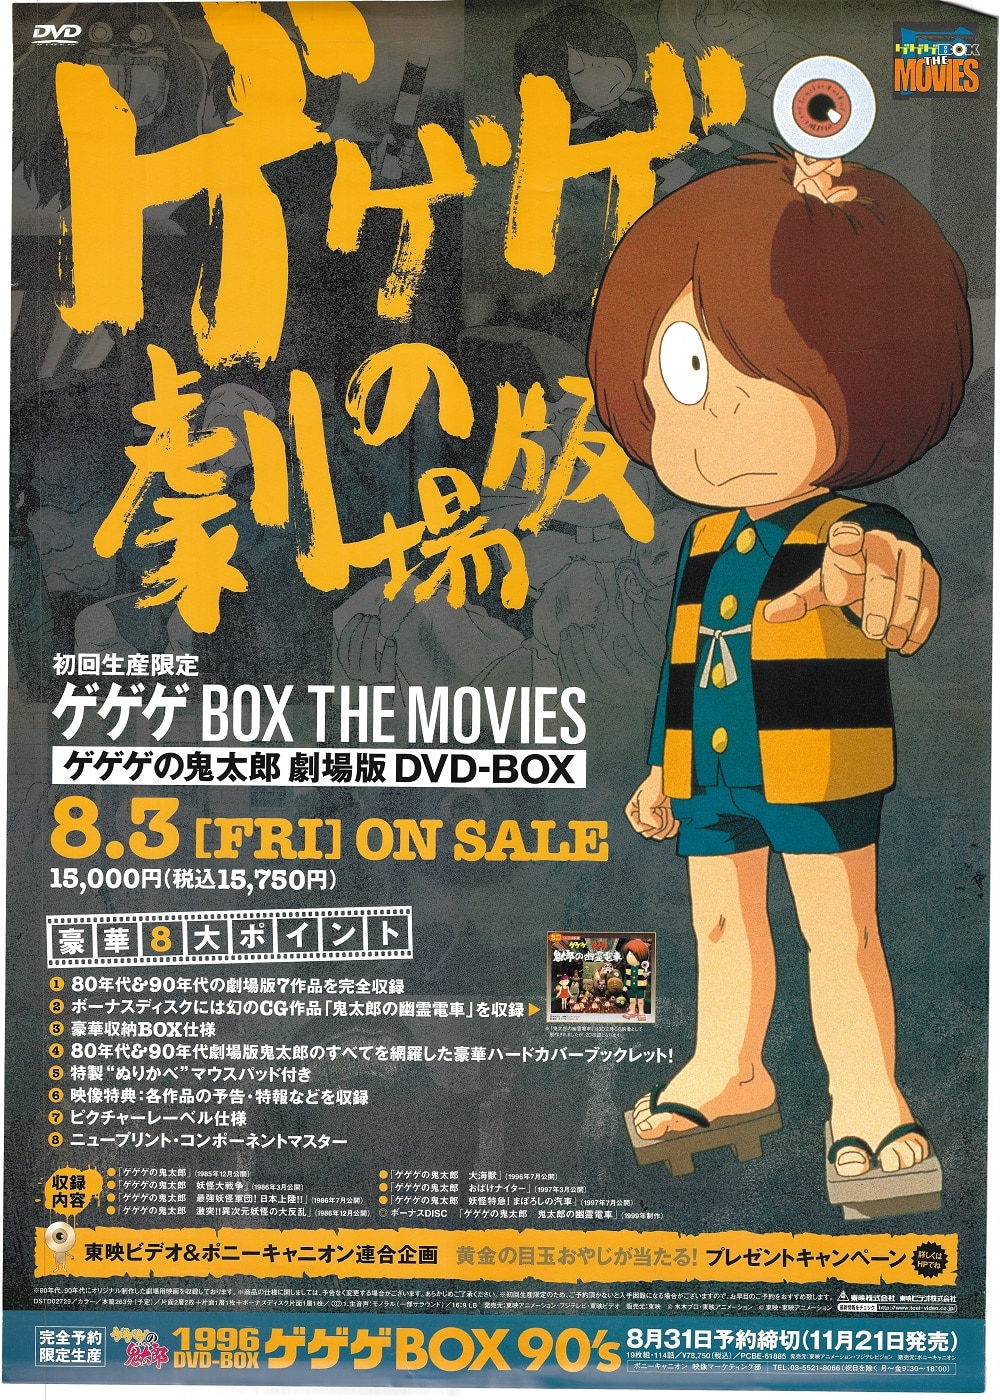 買い特価DVD ゲゲゲの鬼太郎 劇場版DVD-BOX ゲゲゲBOX THE MOVIES か行